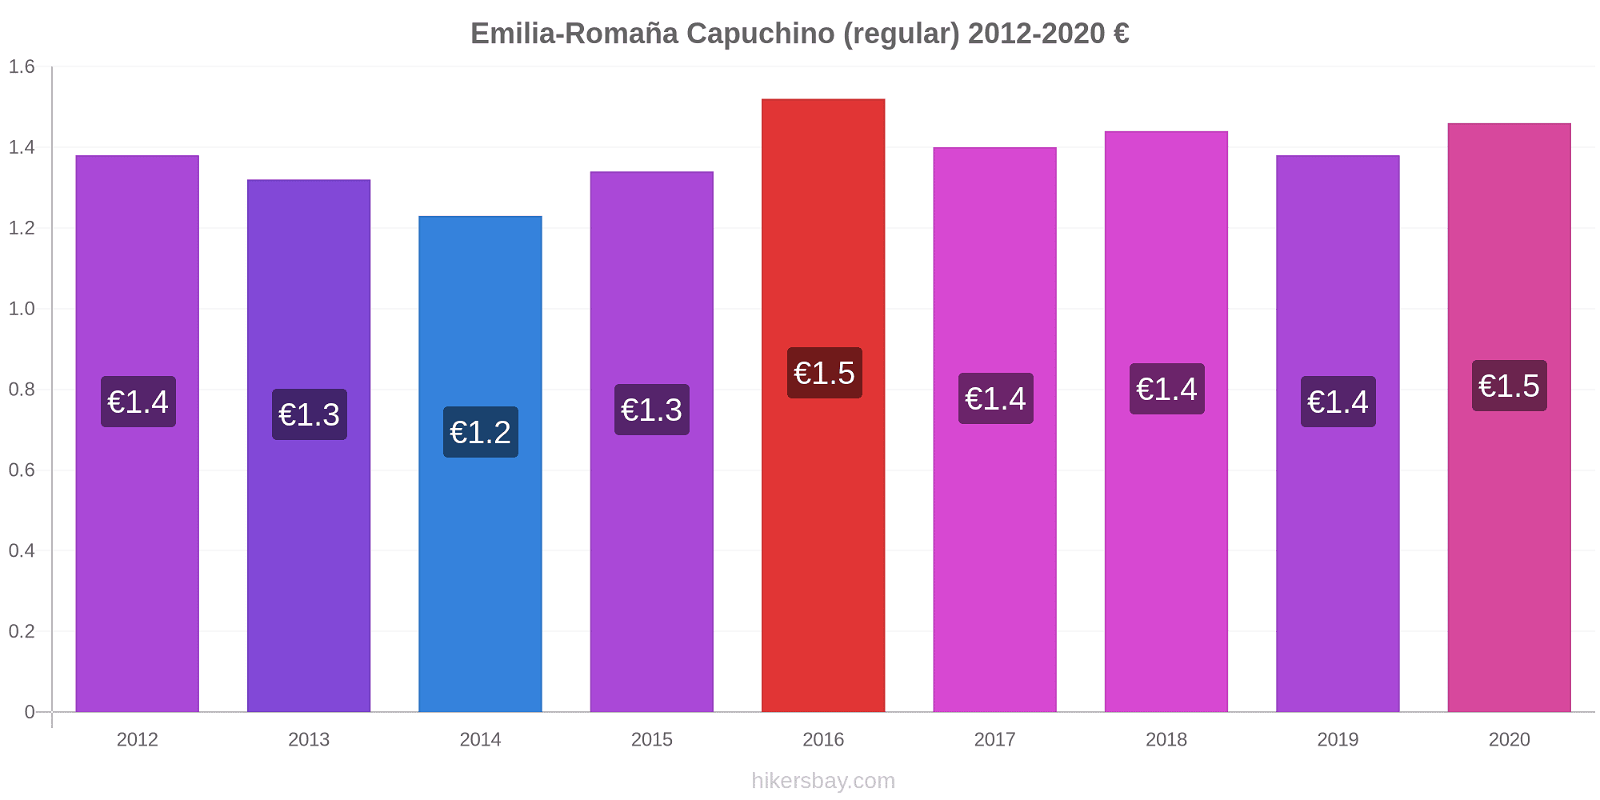 Emilia-Romaña cambios de precios Capuchino (regular) hikersbay.com